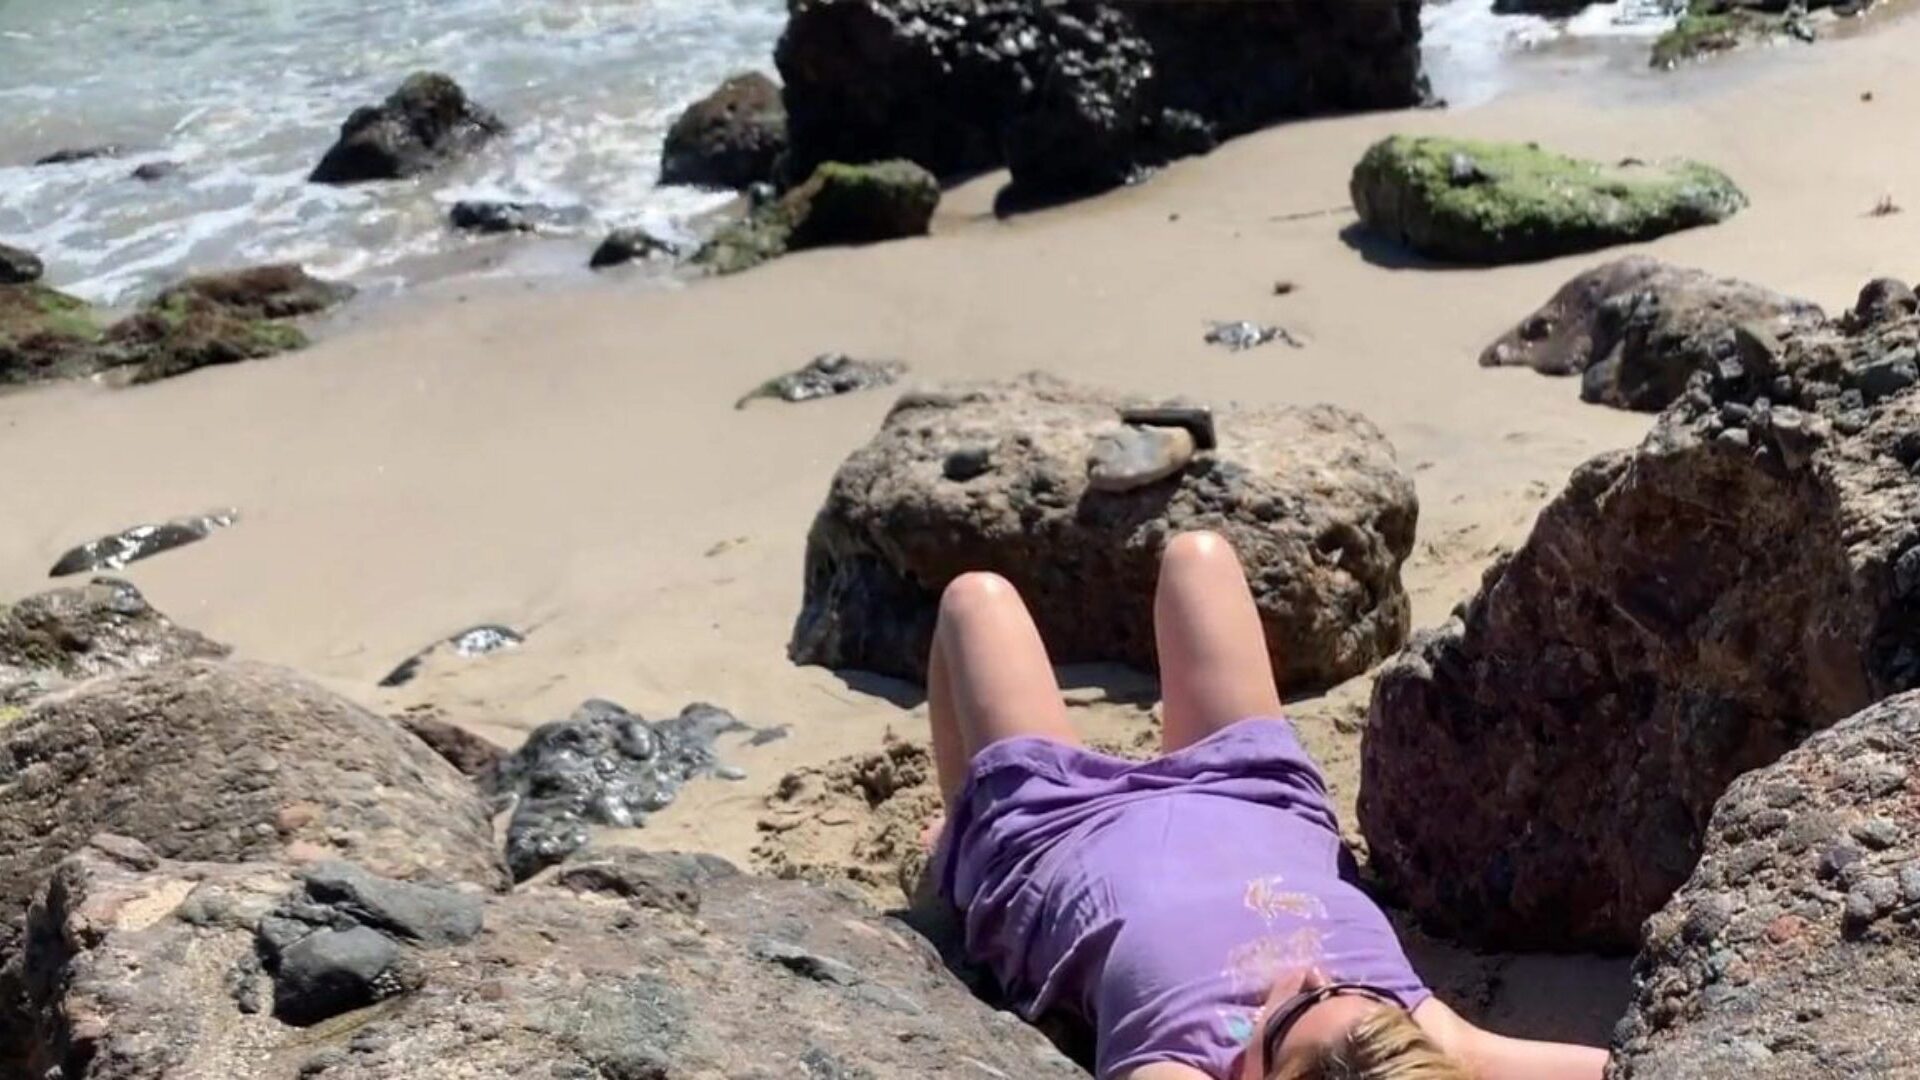 Сладострастный златовласый загорает голым на пляже, сосет прохожий сексуальный златовласый накачивающий парень на пляже, пойманный на камеру